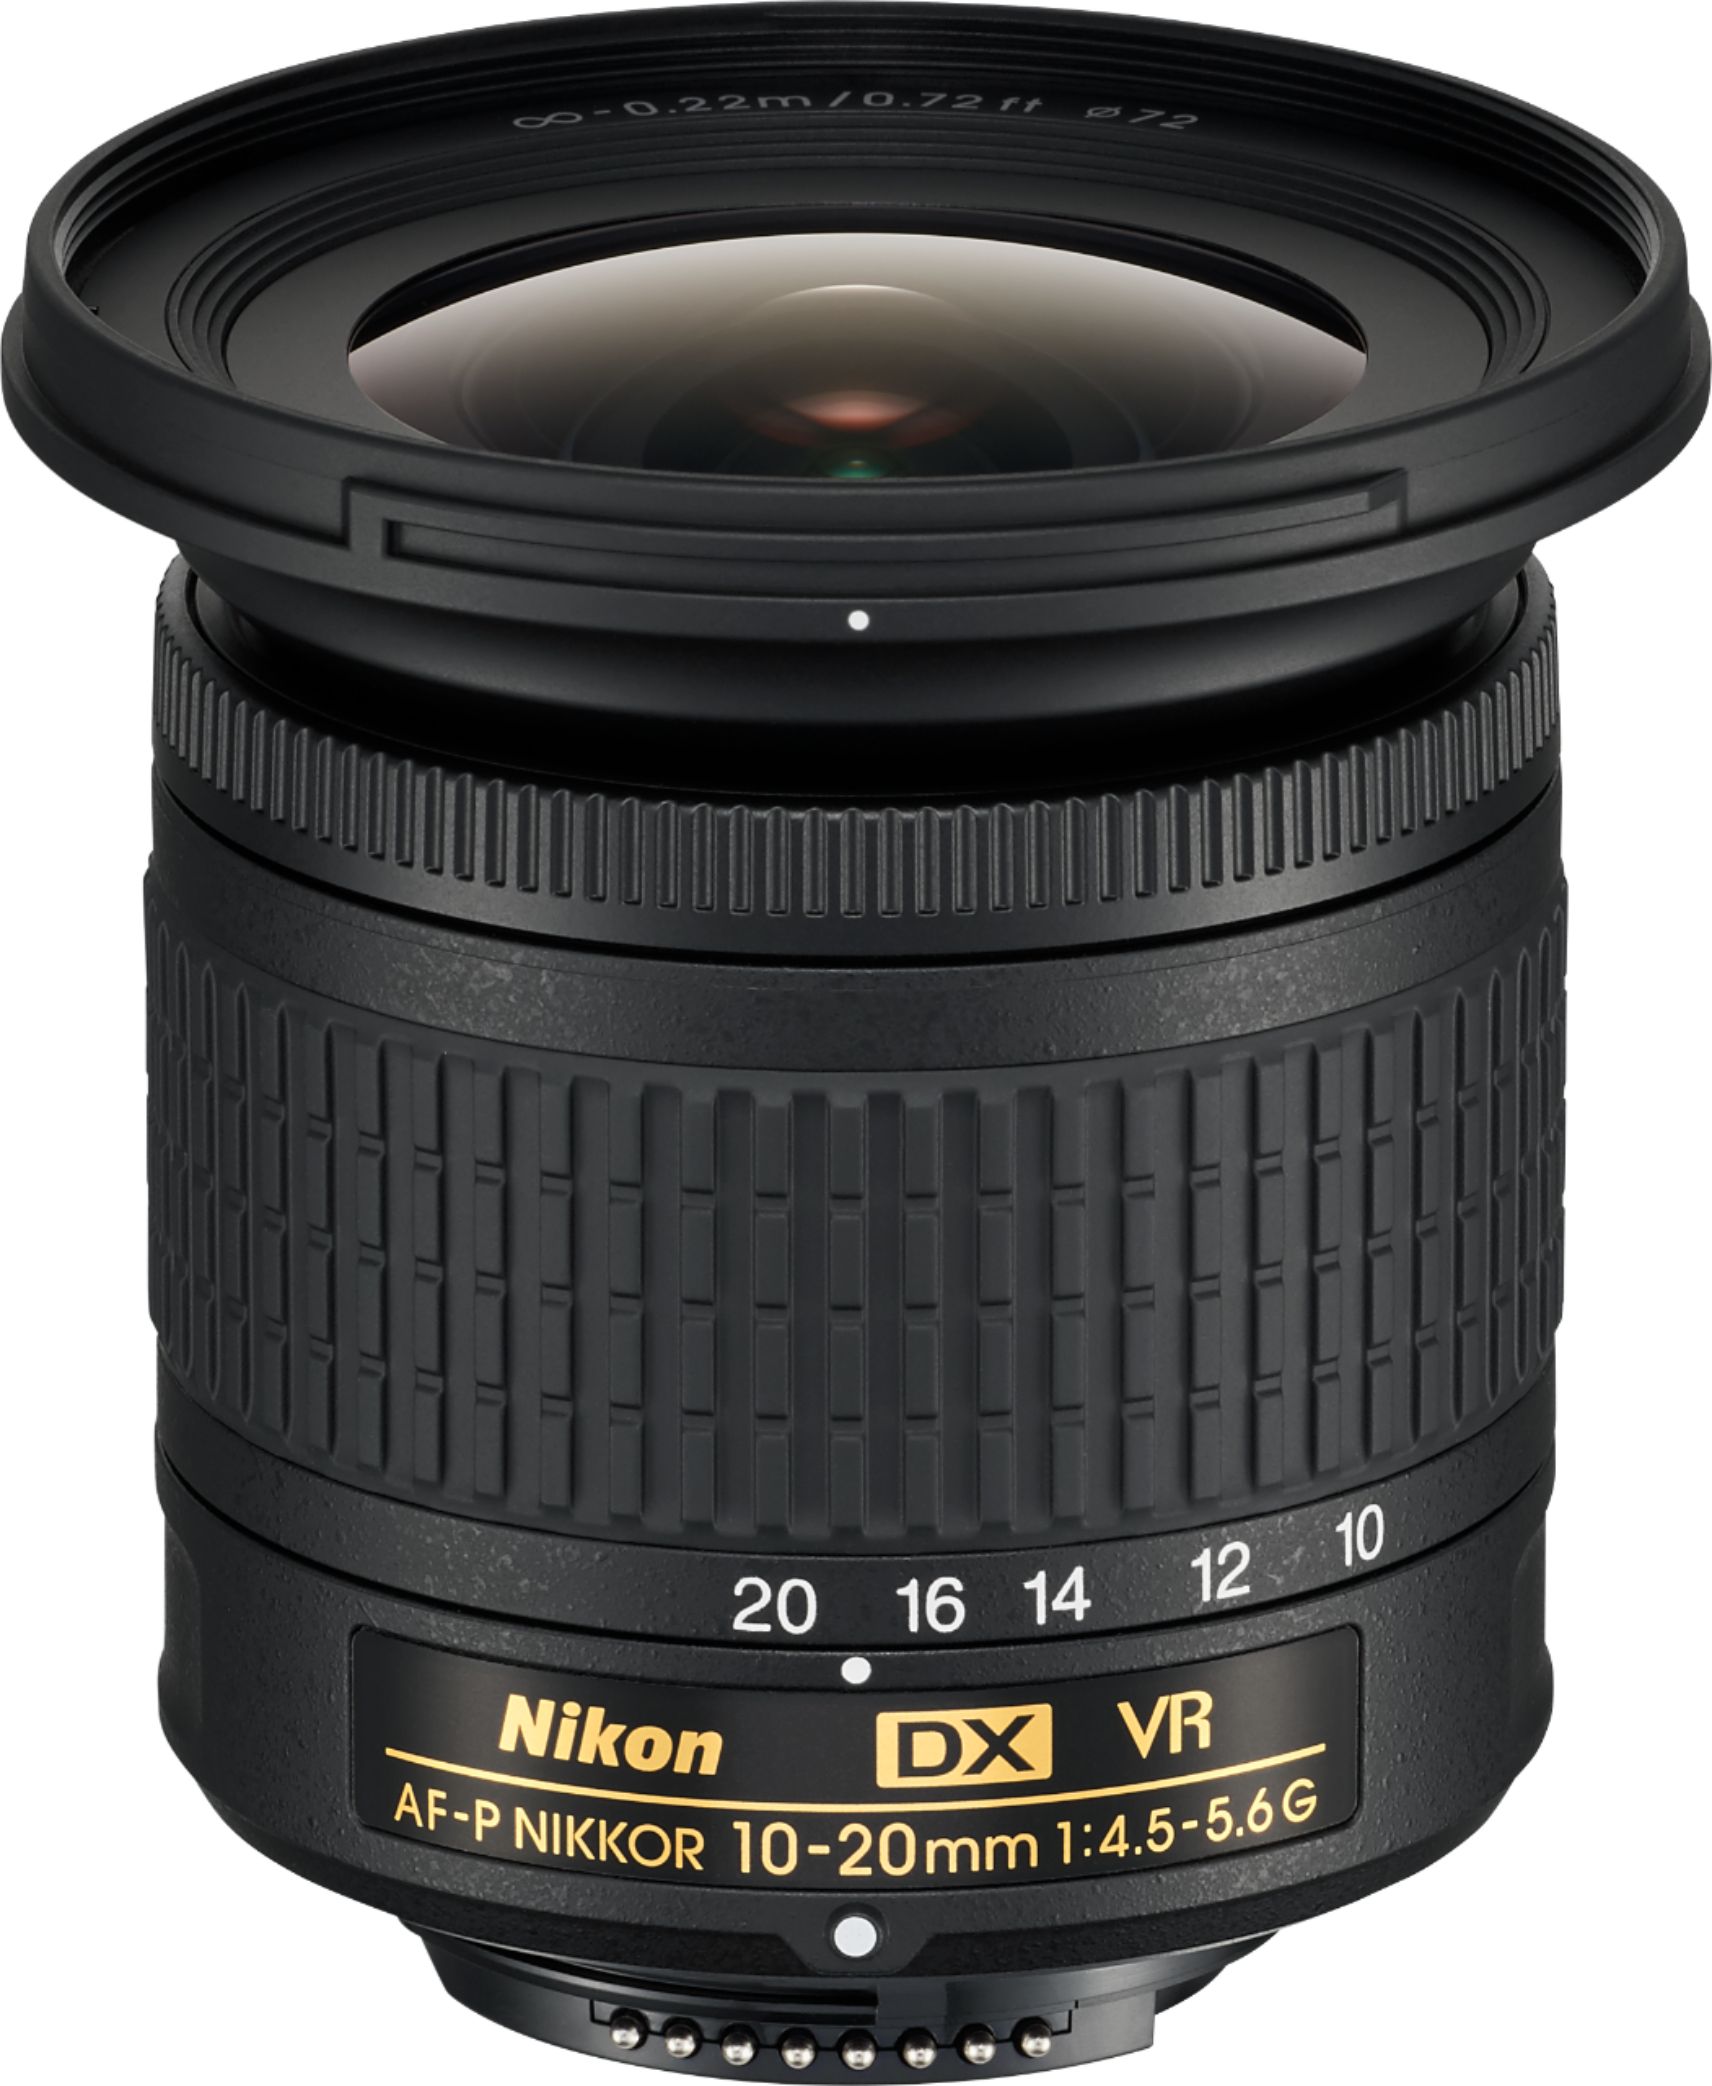 Nikon Af P Dx Nikkor 10 mm F 4 5 5 6g Vr Wide Angle Zoom Lens For Aps C F Mount Cameras Black 067 Best Buy